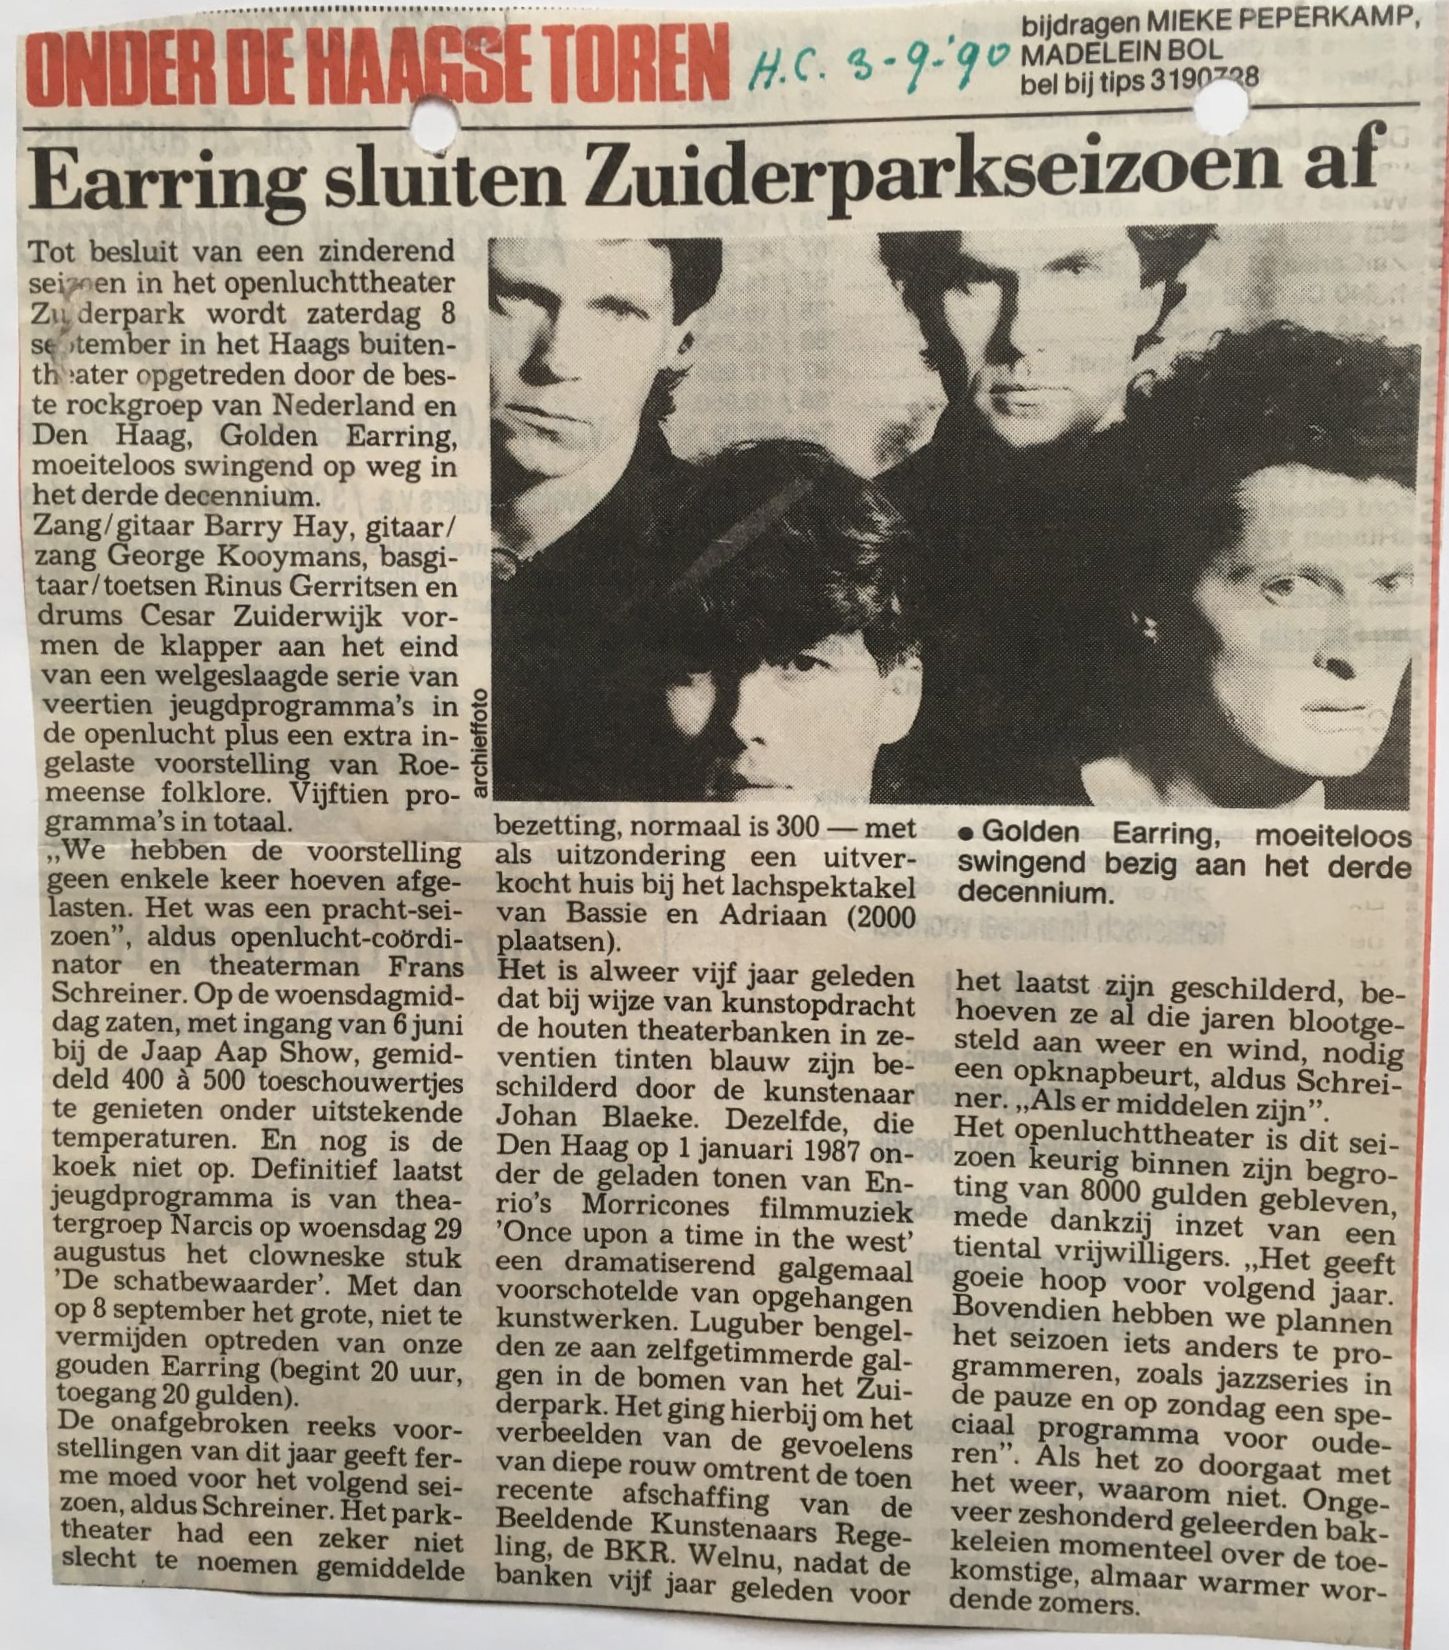 Haagsche Courant Newspaper article about Golden Earring show announcement September 08 1990 Den Haag - Openluchtheater Zuiderpark (Collection Ria Brekelmans)